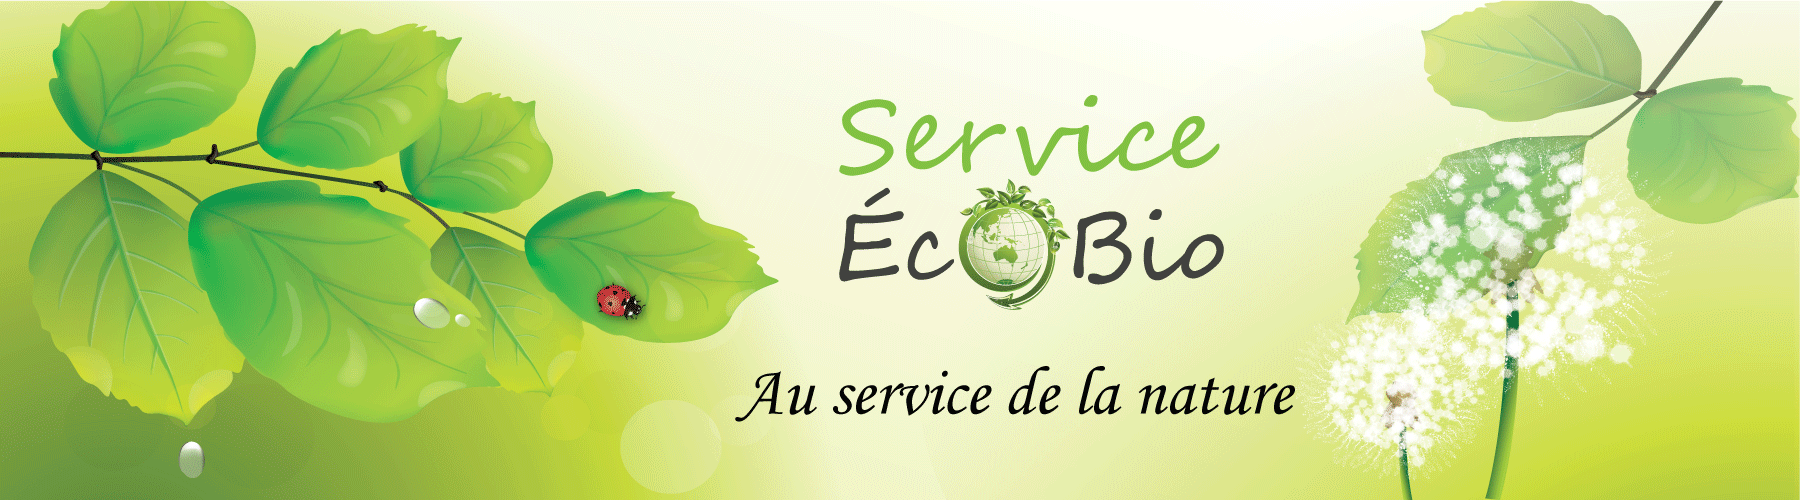 LB Service Ecobio à Neuvic sur l'Isle en Dordogne